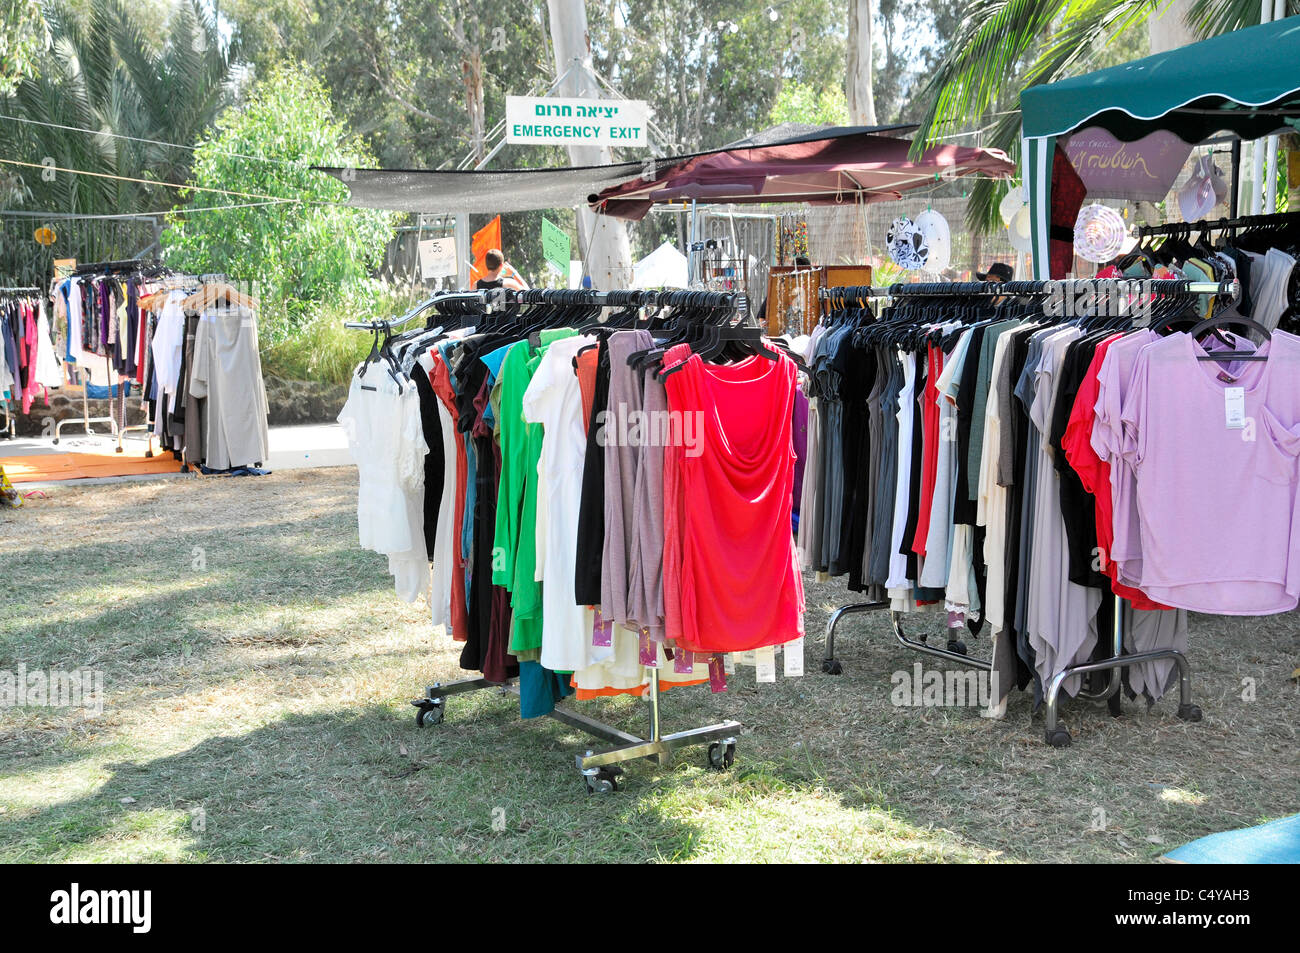 Outdoor clothes market at a fair Stock Photo